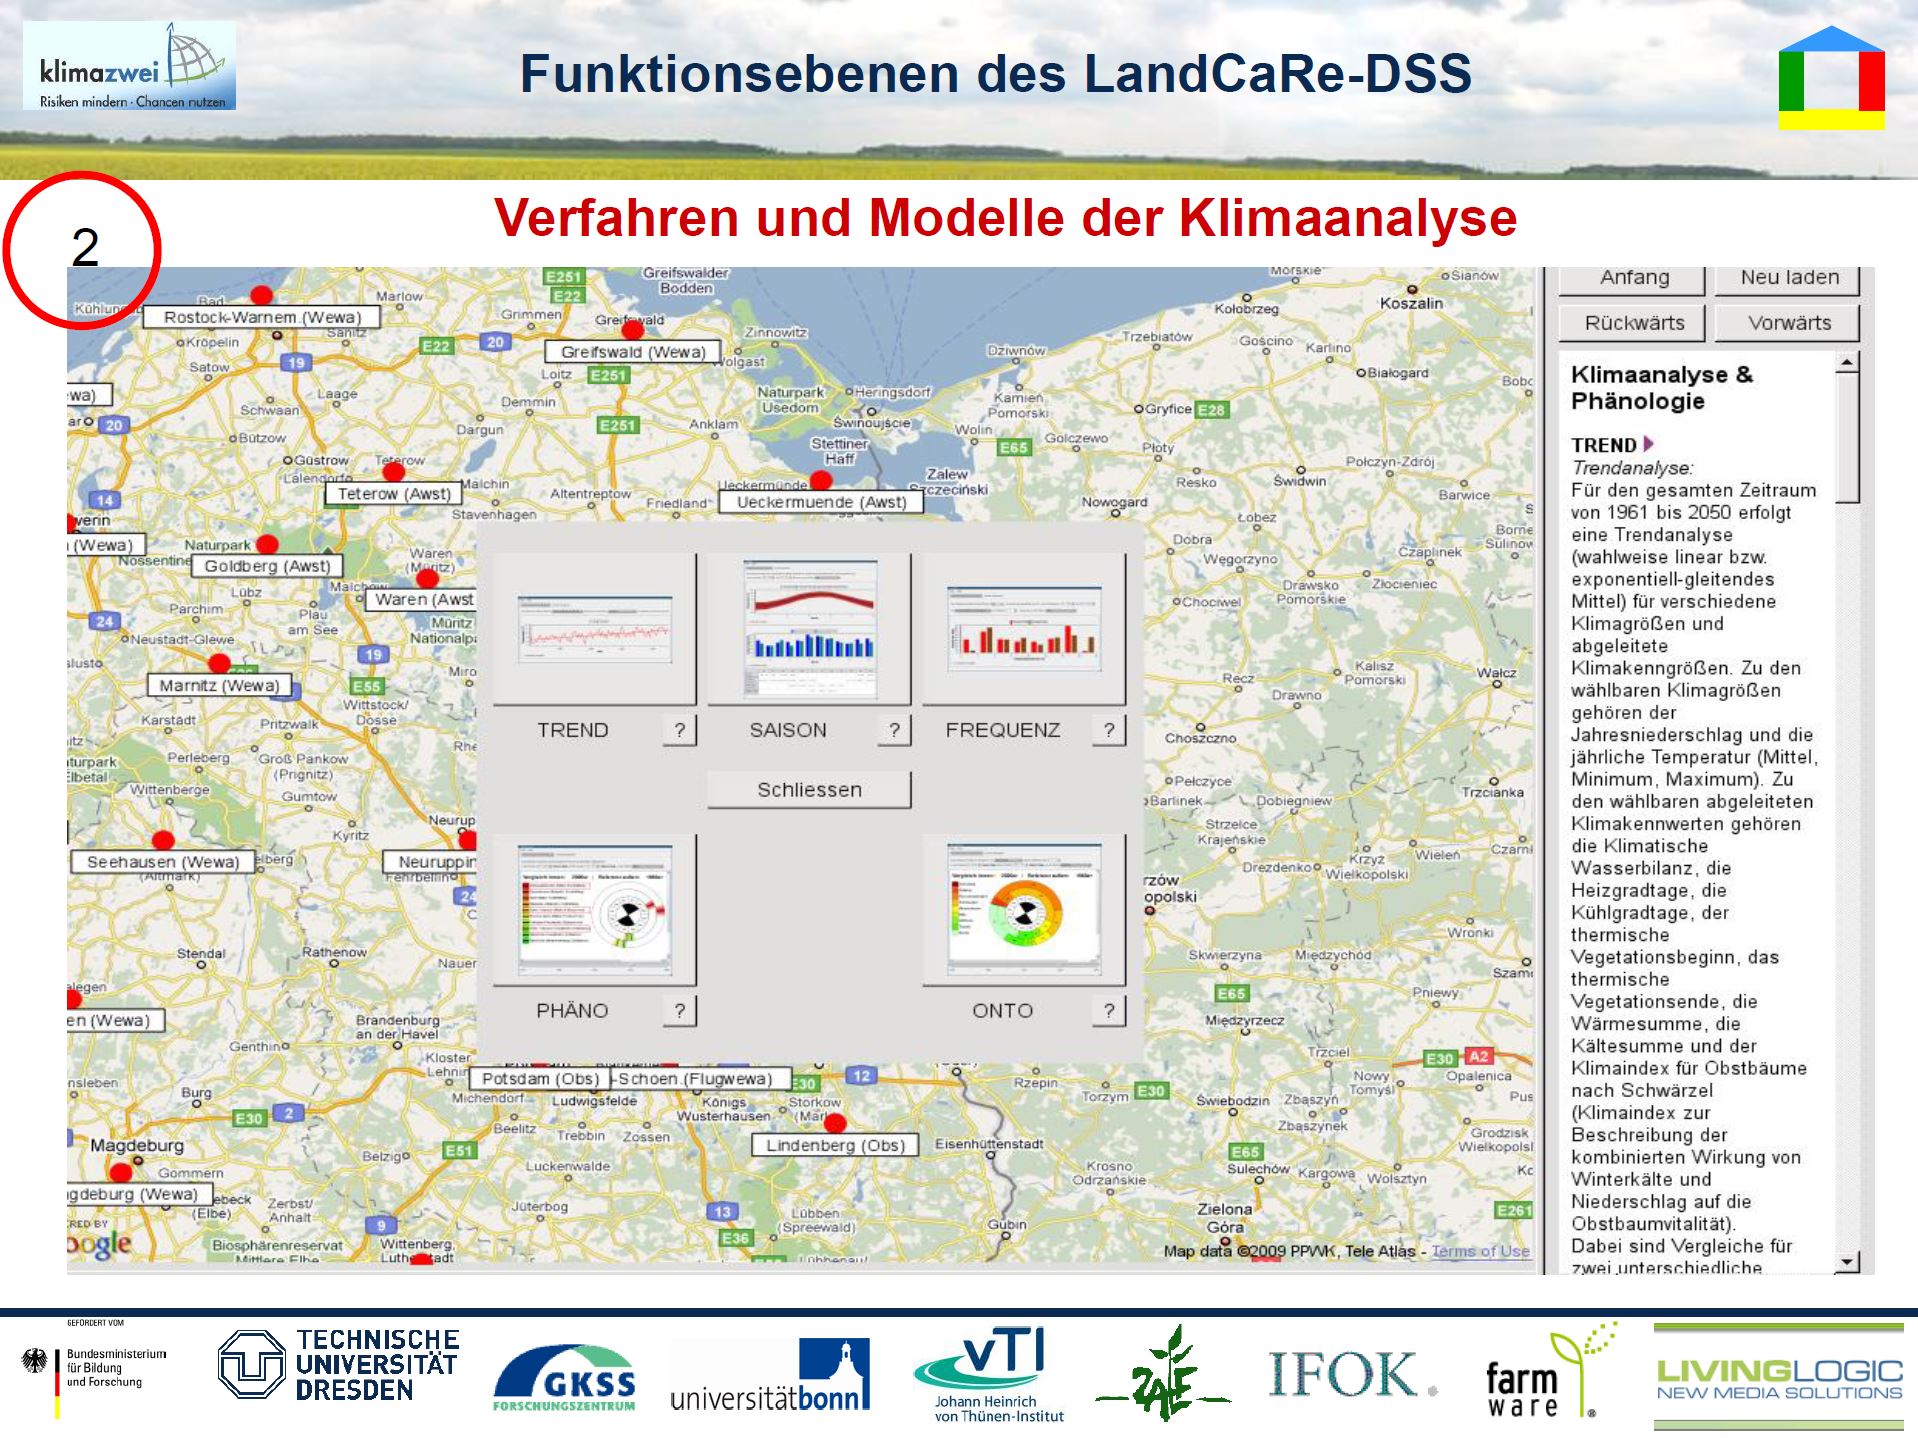 18/33 - LandCaRe-DSS - Funktionsebenen - Verfahren und Modelle der Klimaanalyse